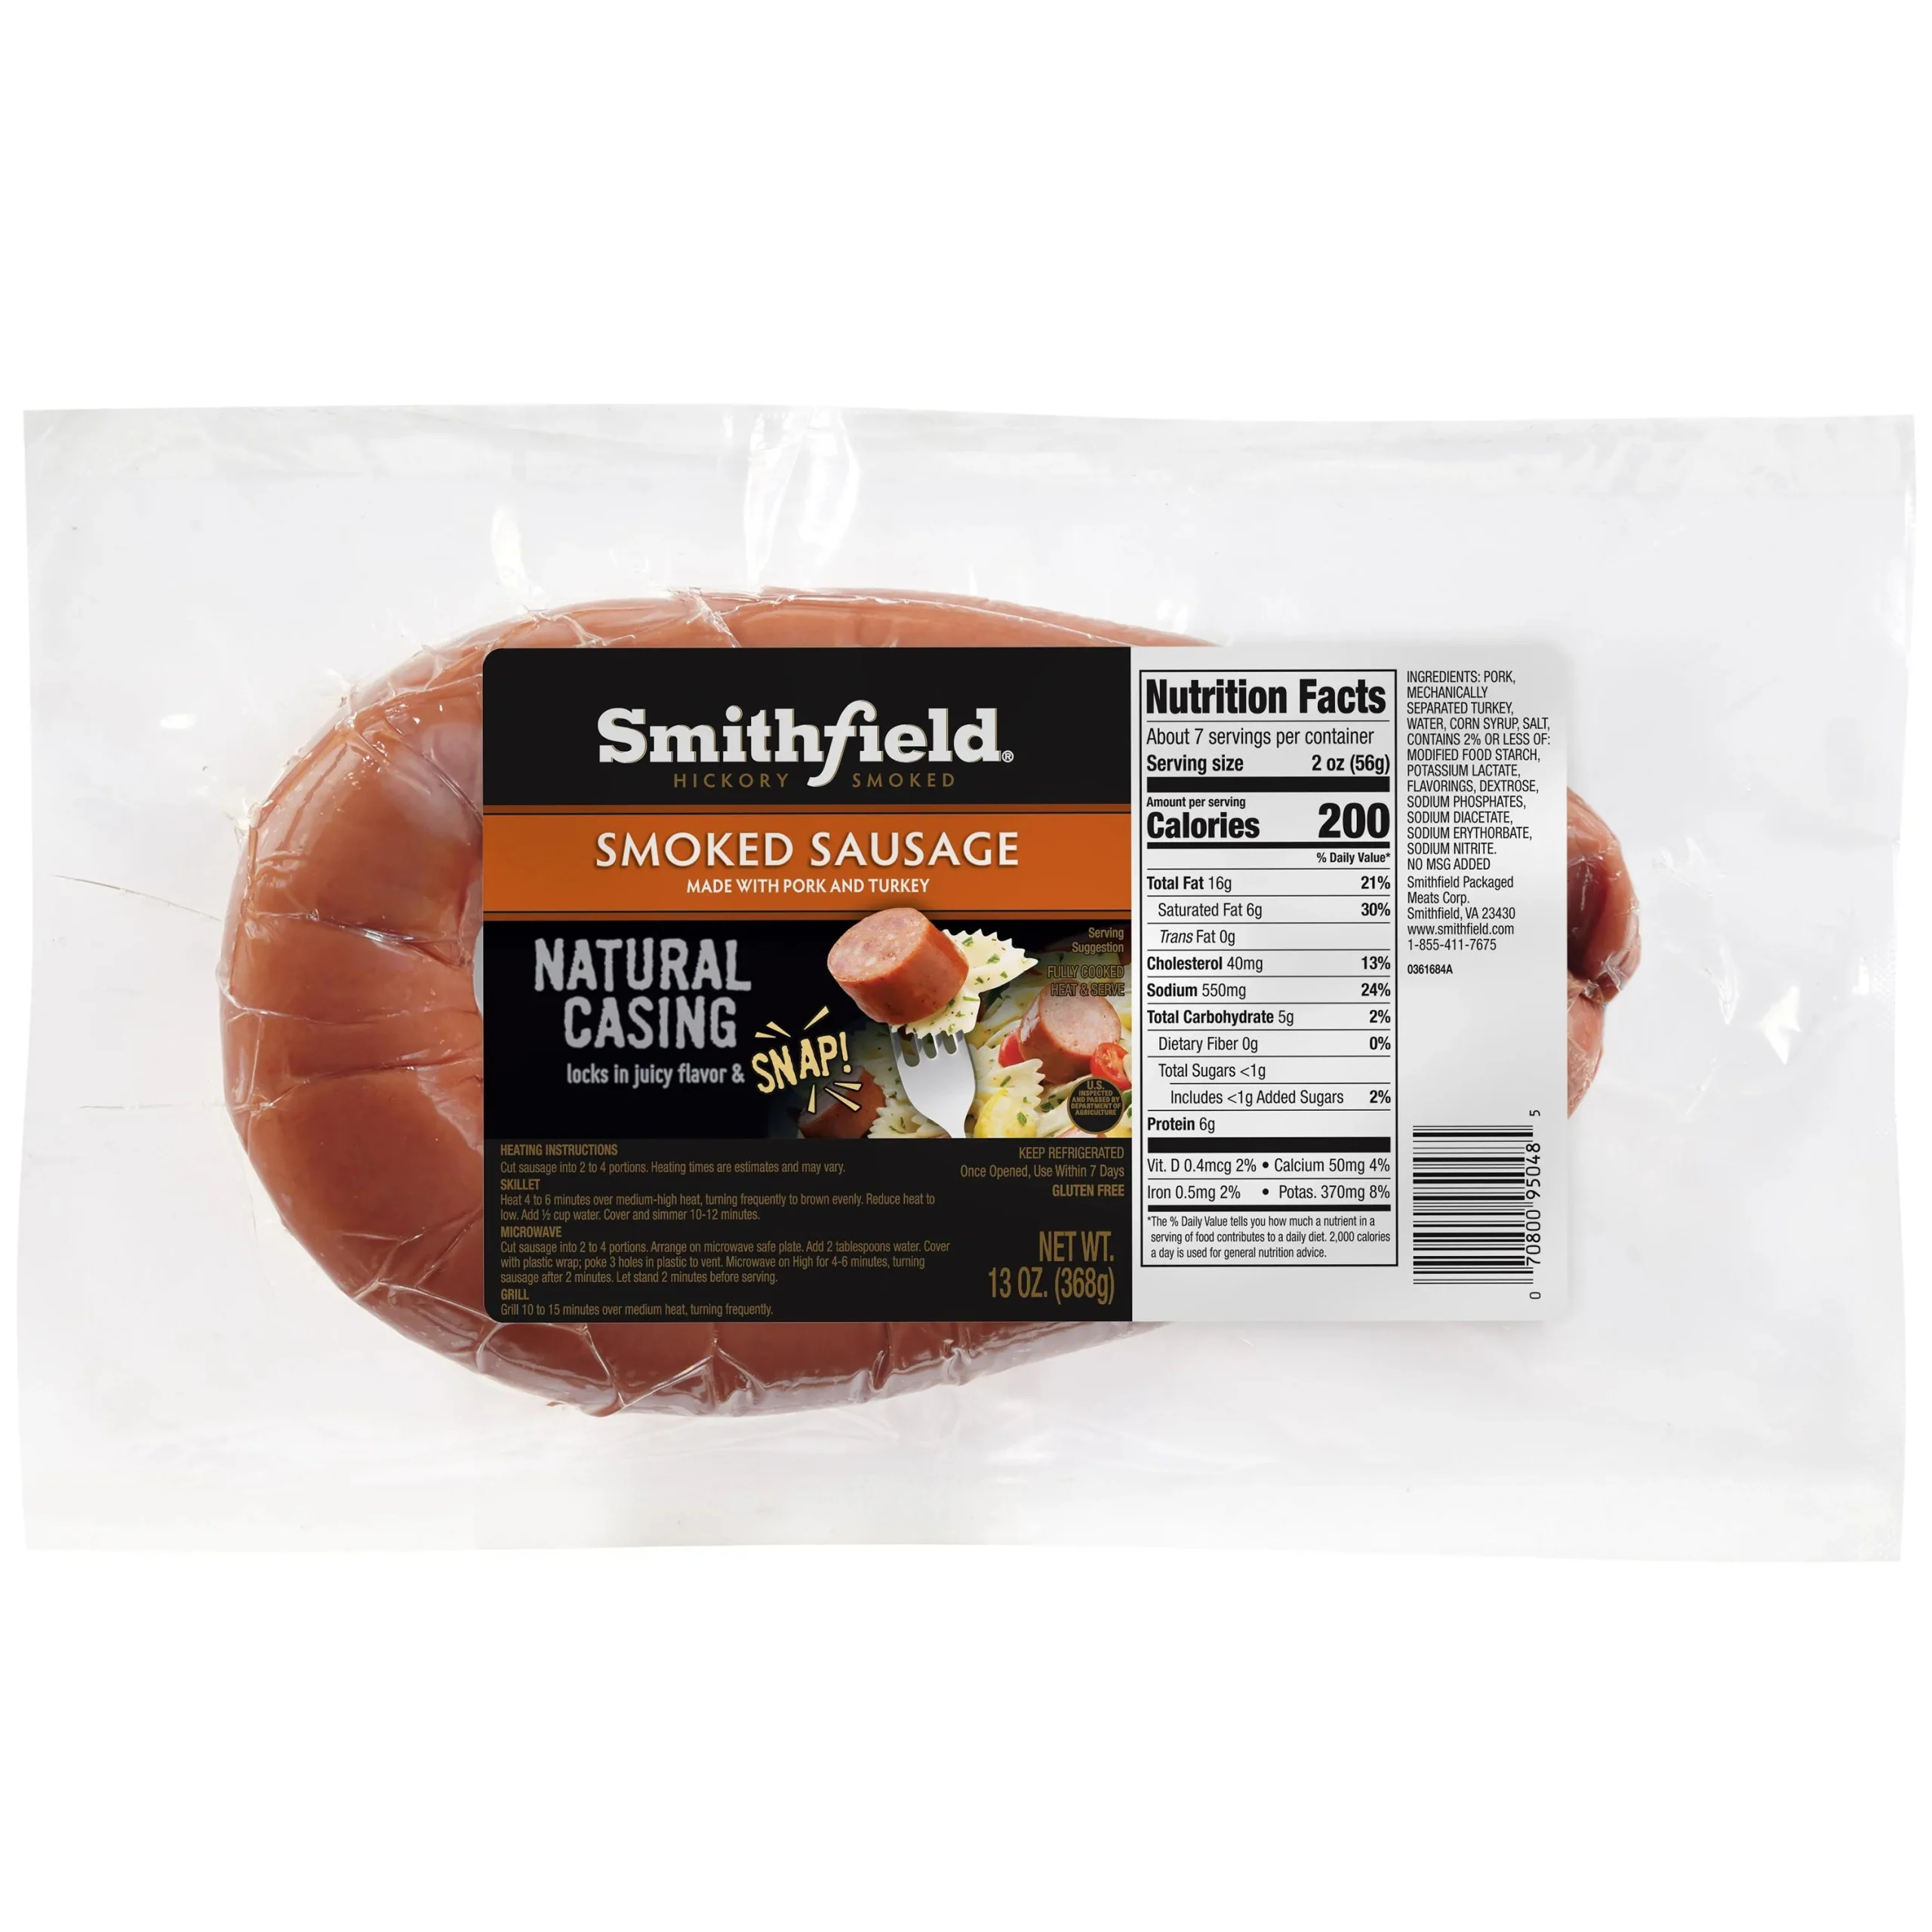 smithfield beef smoked sausage - How to cook Smithfield smoked sausage